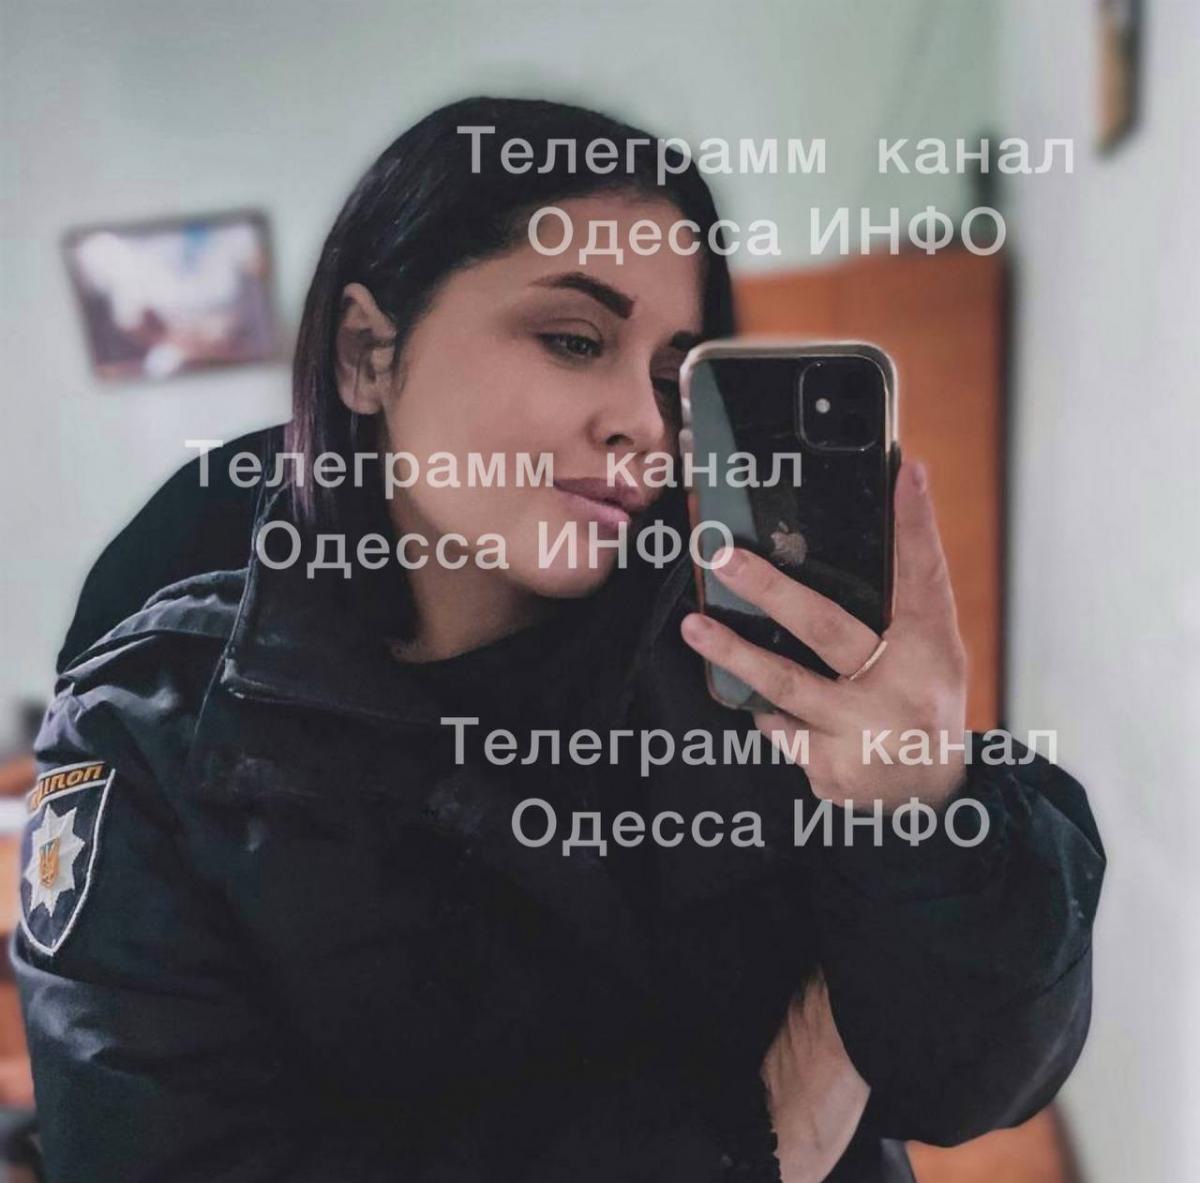 У райвідділі на Одещині застрелили 26-річну поліцейську / фото Одесса INFO